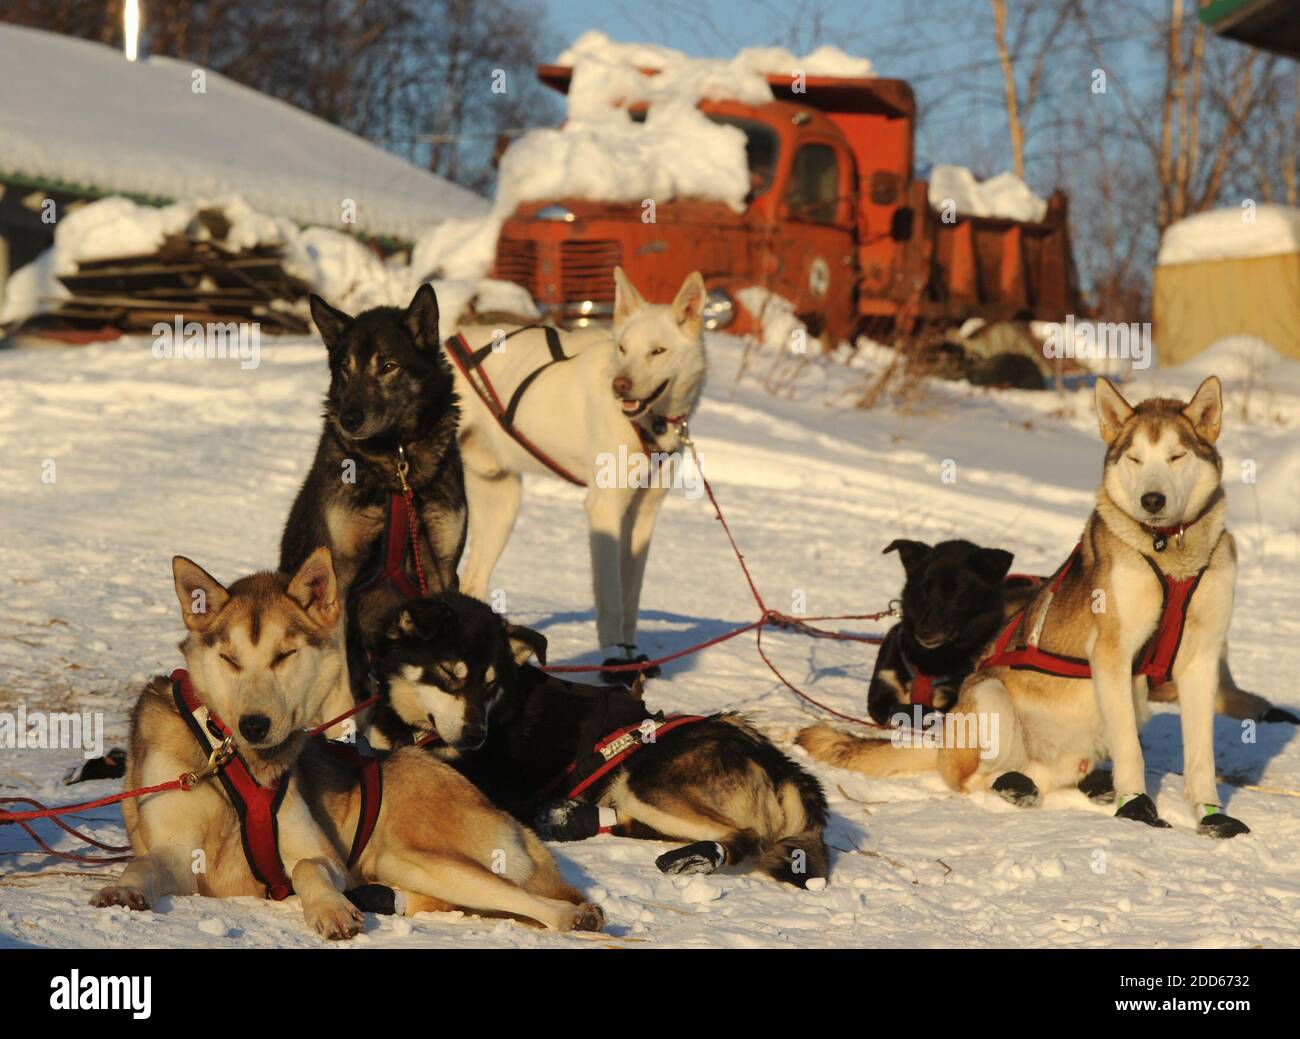 KEIN FILM, KEIN VIDEO, KEIN Fernsehen, KEINE DOKUMENTATION - die Hunde von  Musher Scott Janssen aus Anchorage, AK, USA warten auf ihr warmes Essen  kurz nach der Ankunft am Takotna Checkpoint während